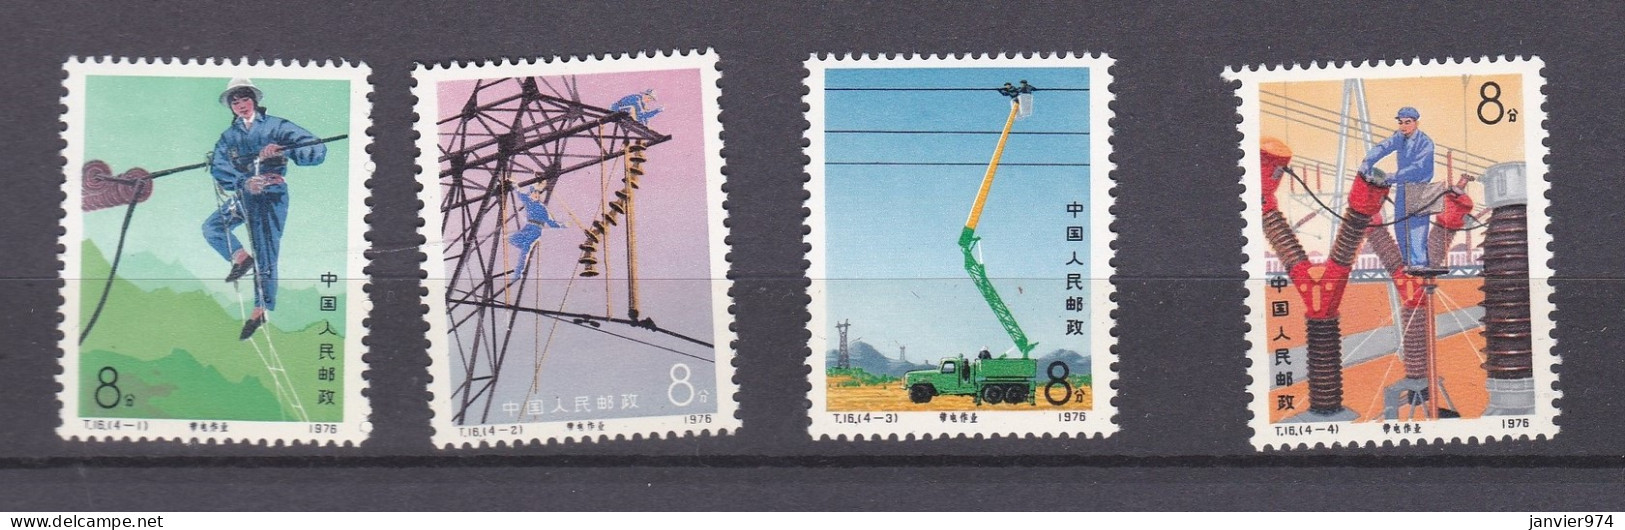 Chine 1976 La Serie Complete  Entretien Des Lignes électriques, 4 Timbres Neufs 1296 à 1299 - Unused Stamps